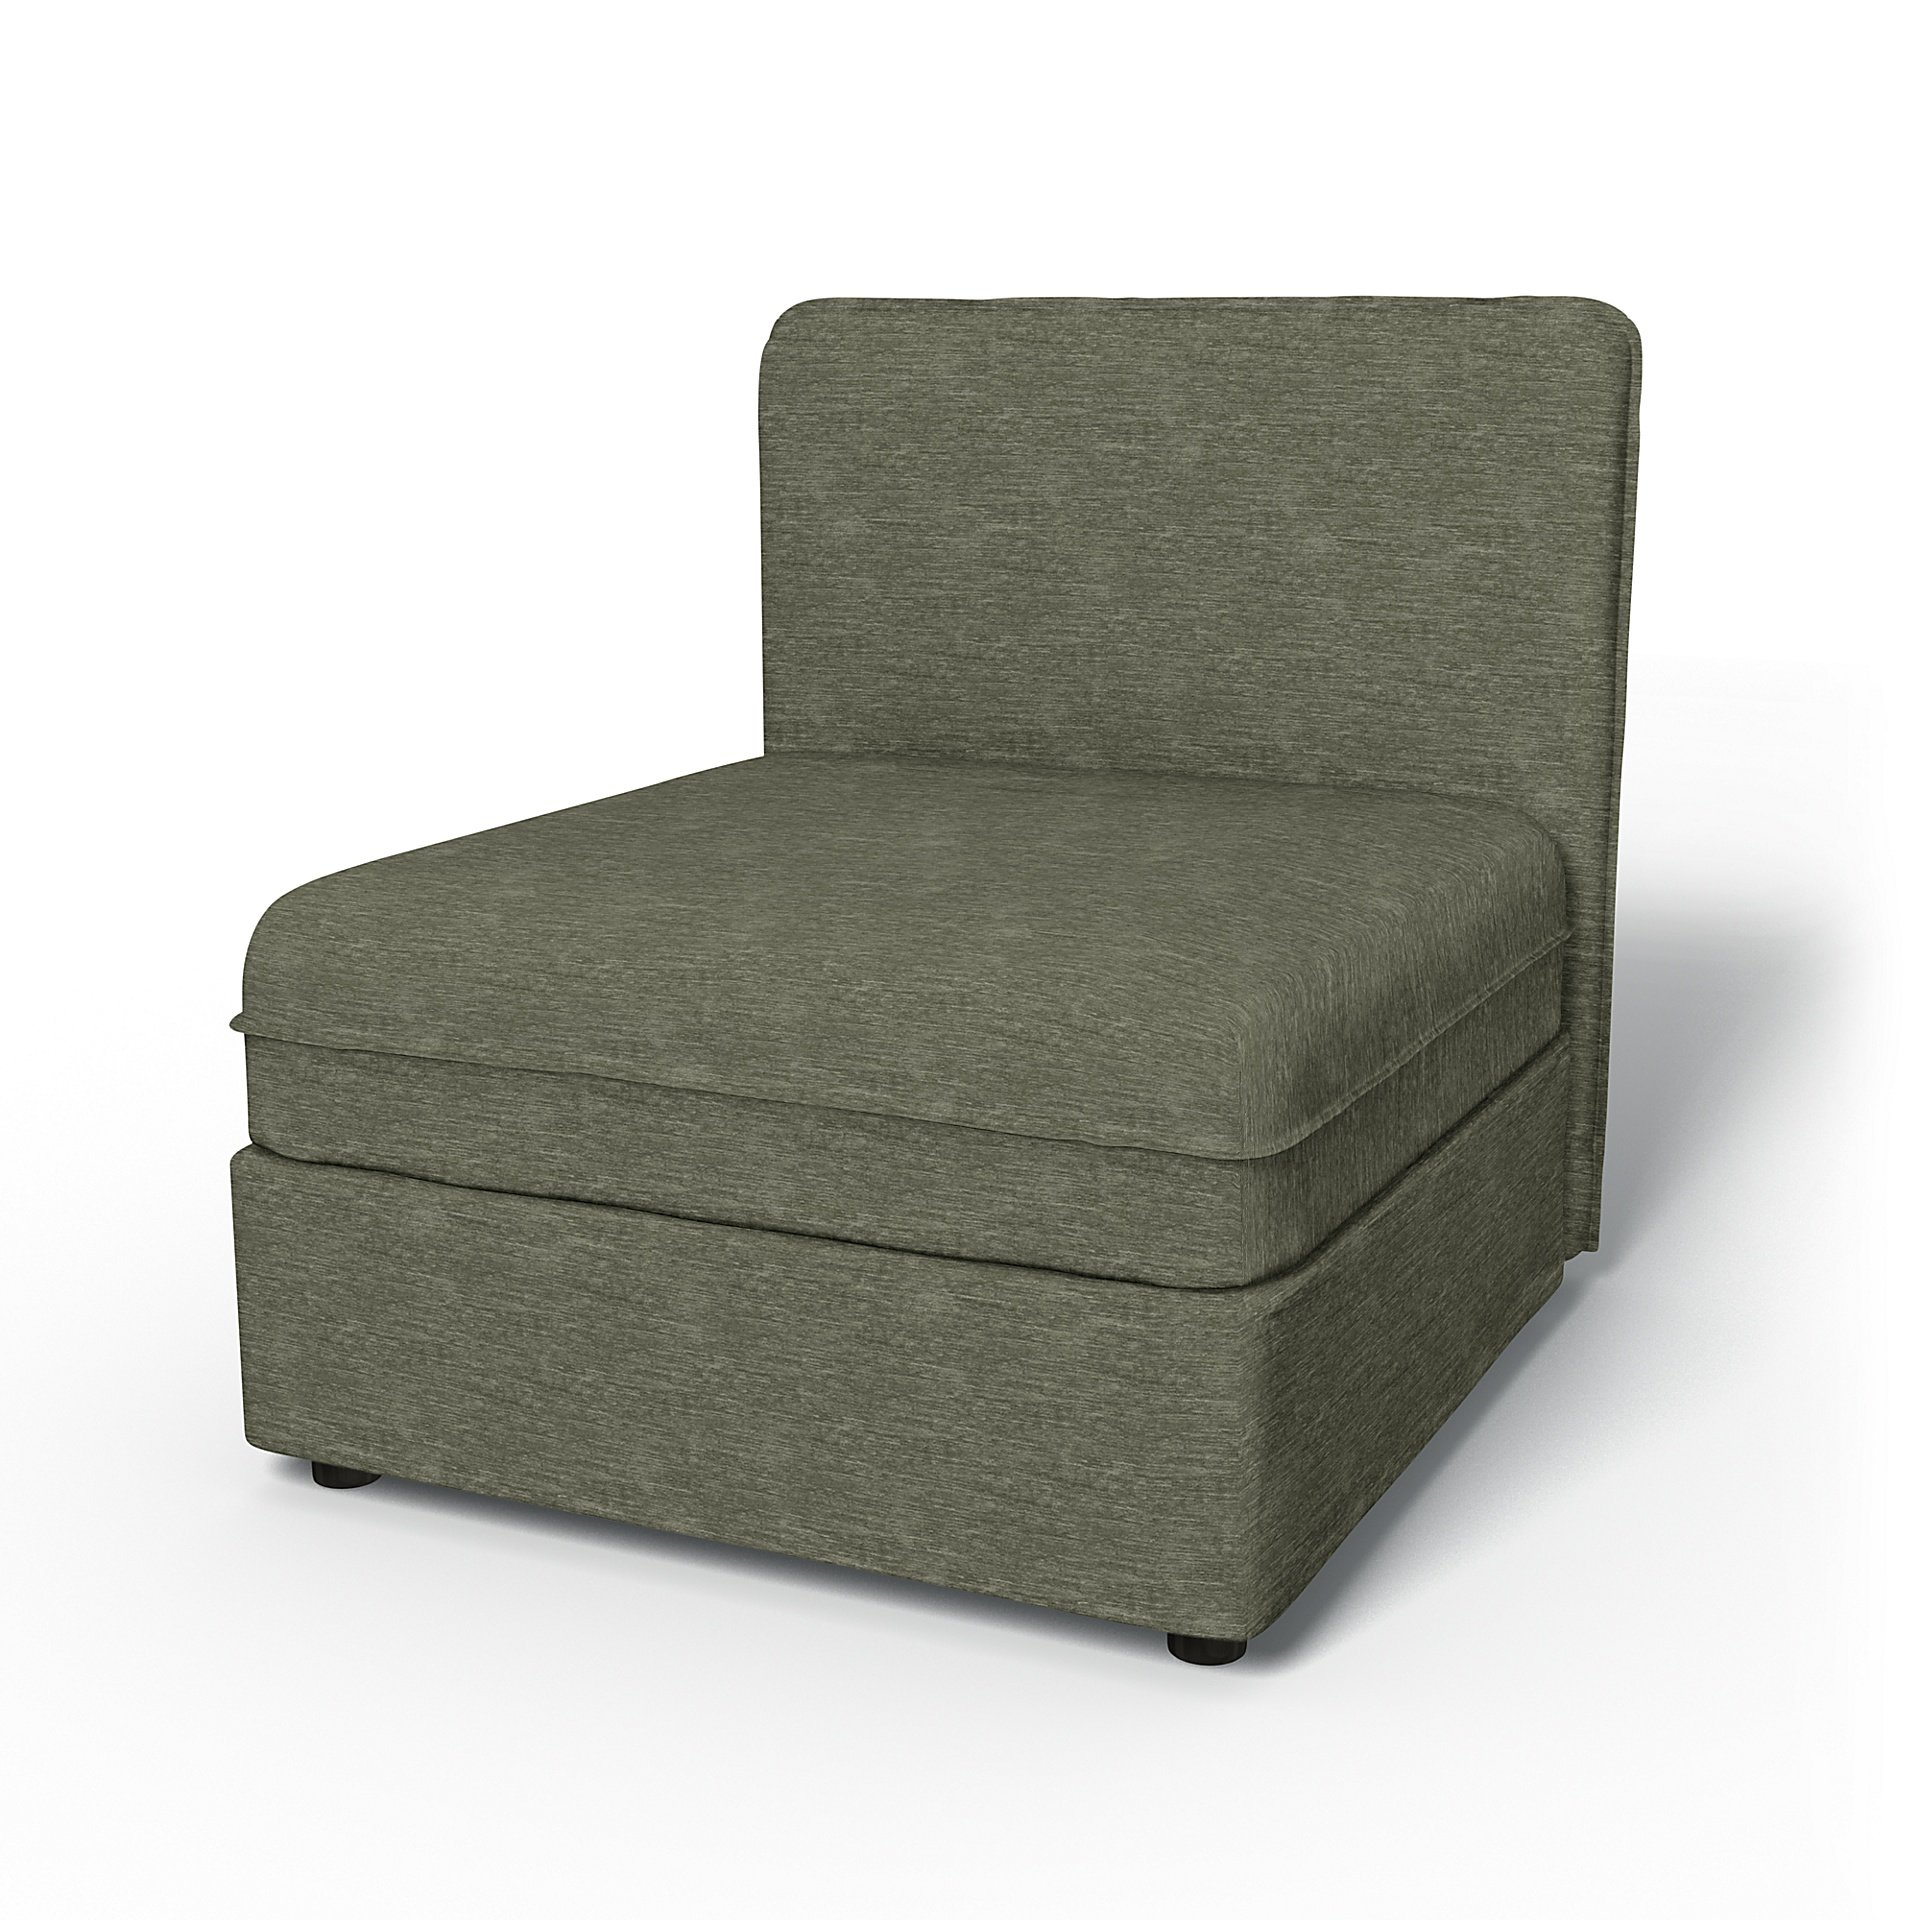 IKEA - Vallentuna Seat Module with Low Back Cover 80x80cm 32x32in, Green Grey, Velvet - Bemz